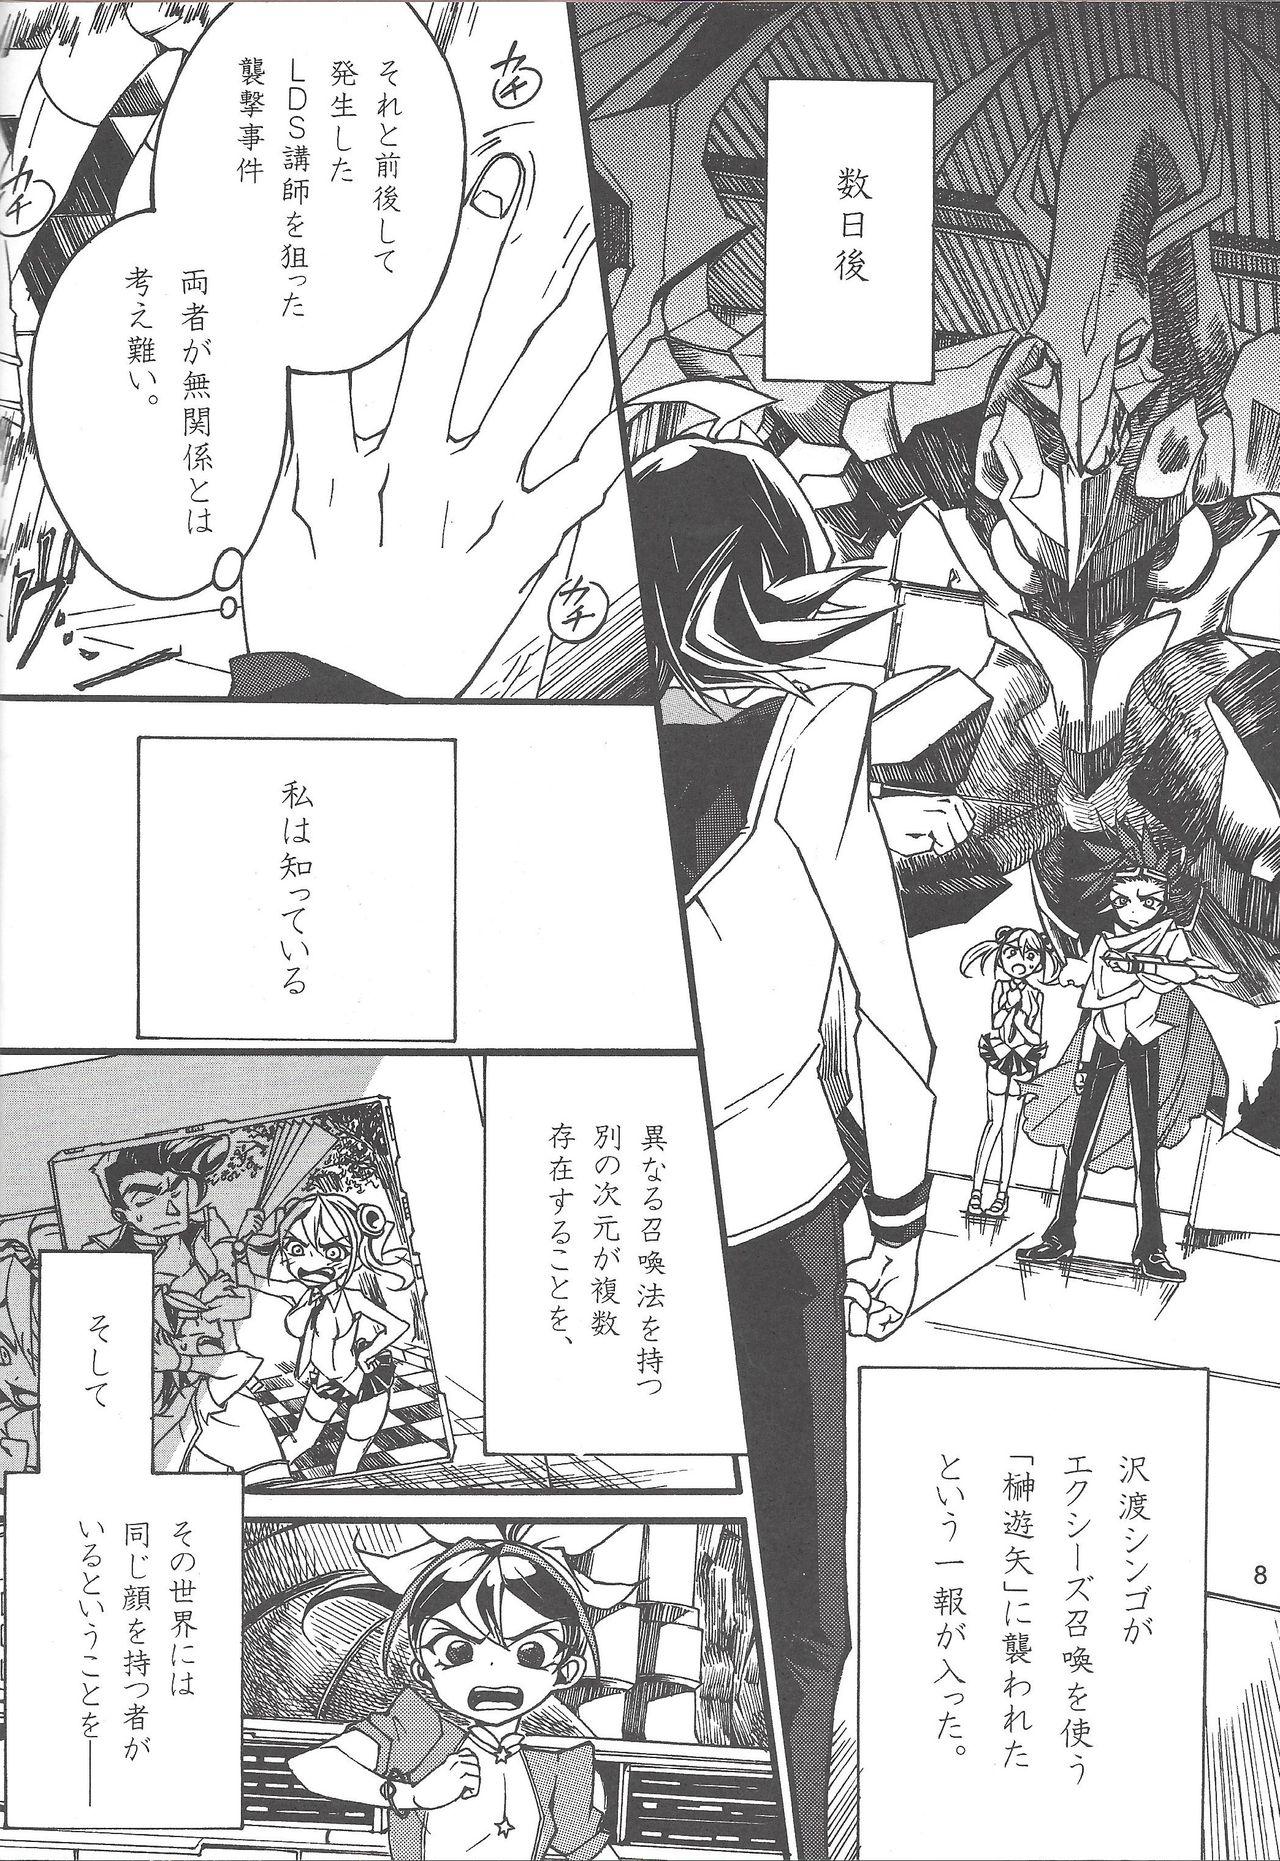 Storyline Uso-tsuki akuma no koi - Yu-gi-oh arc-v Brasileira - Page 7